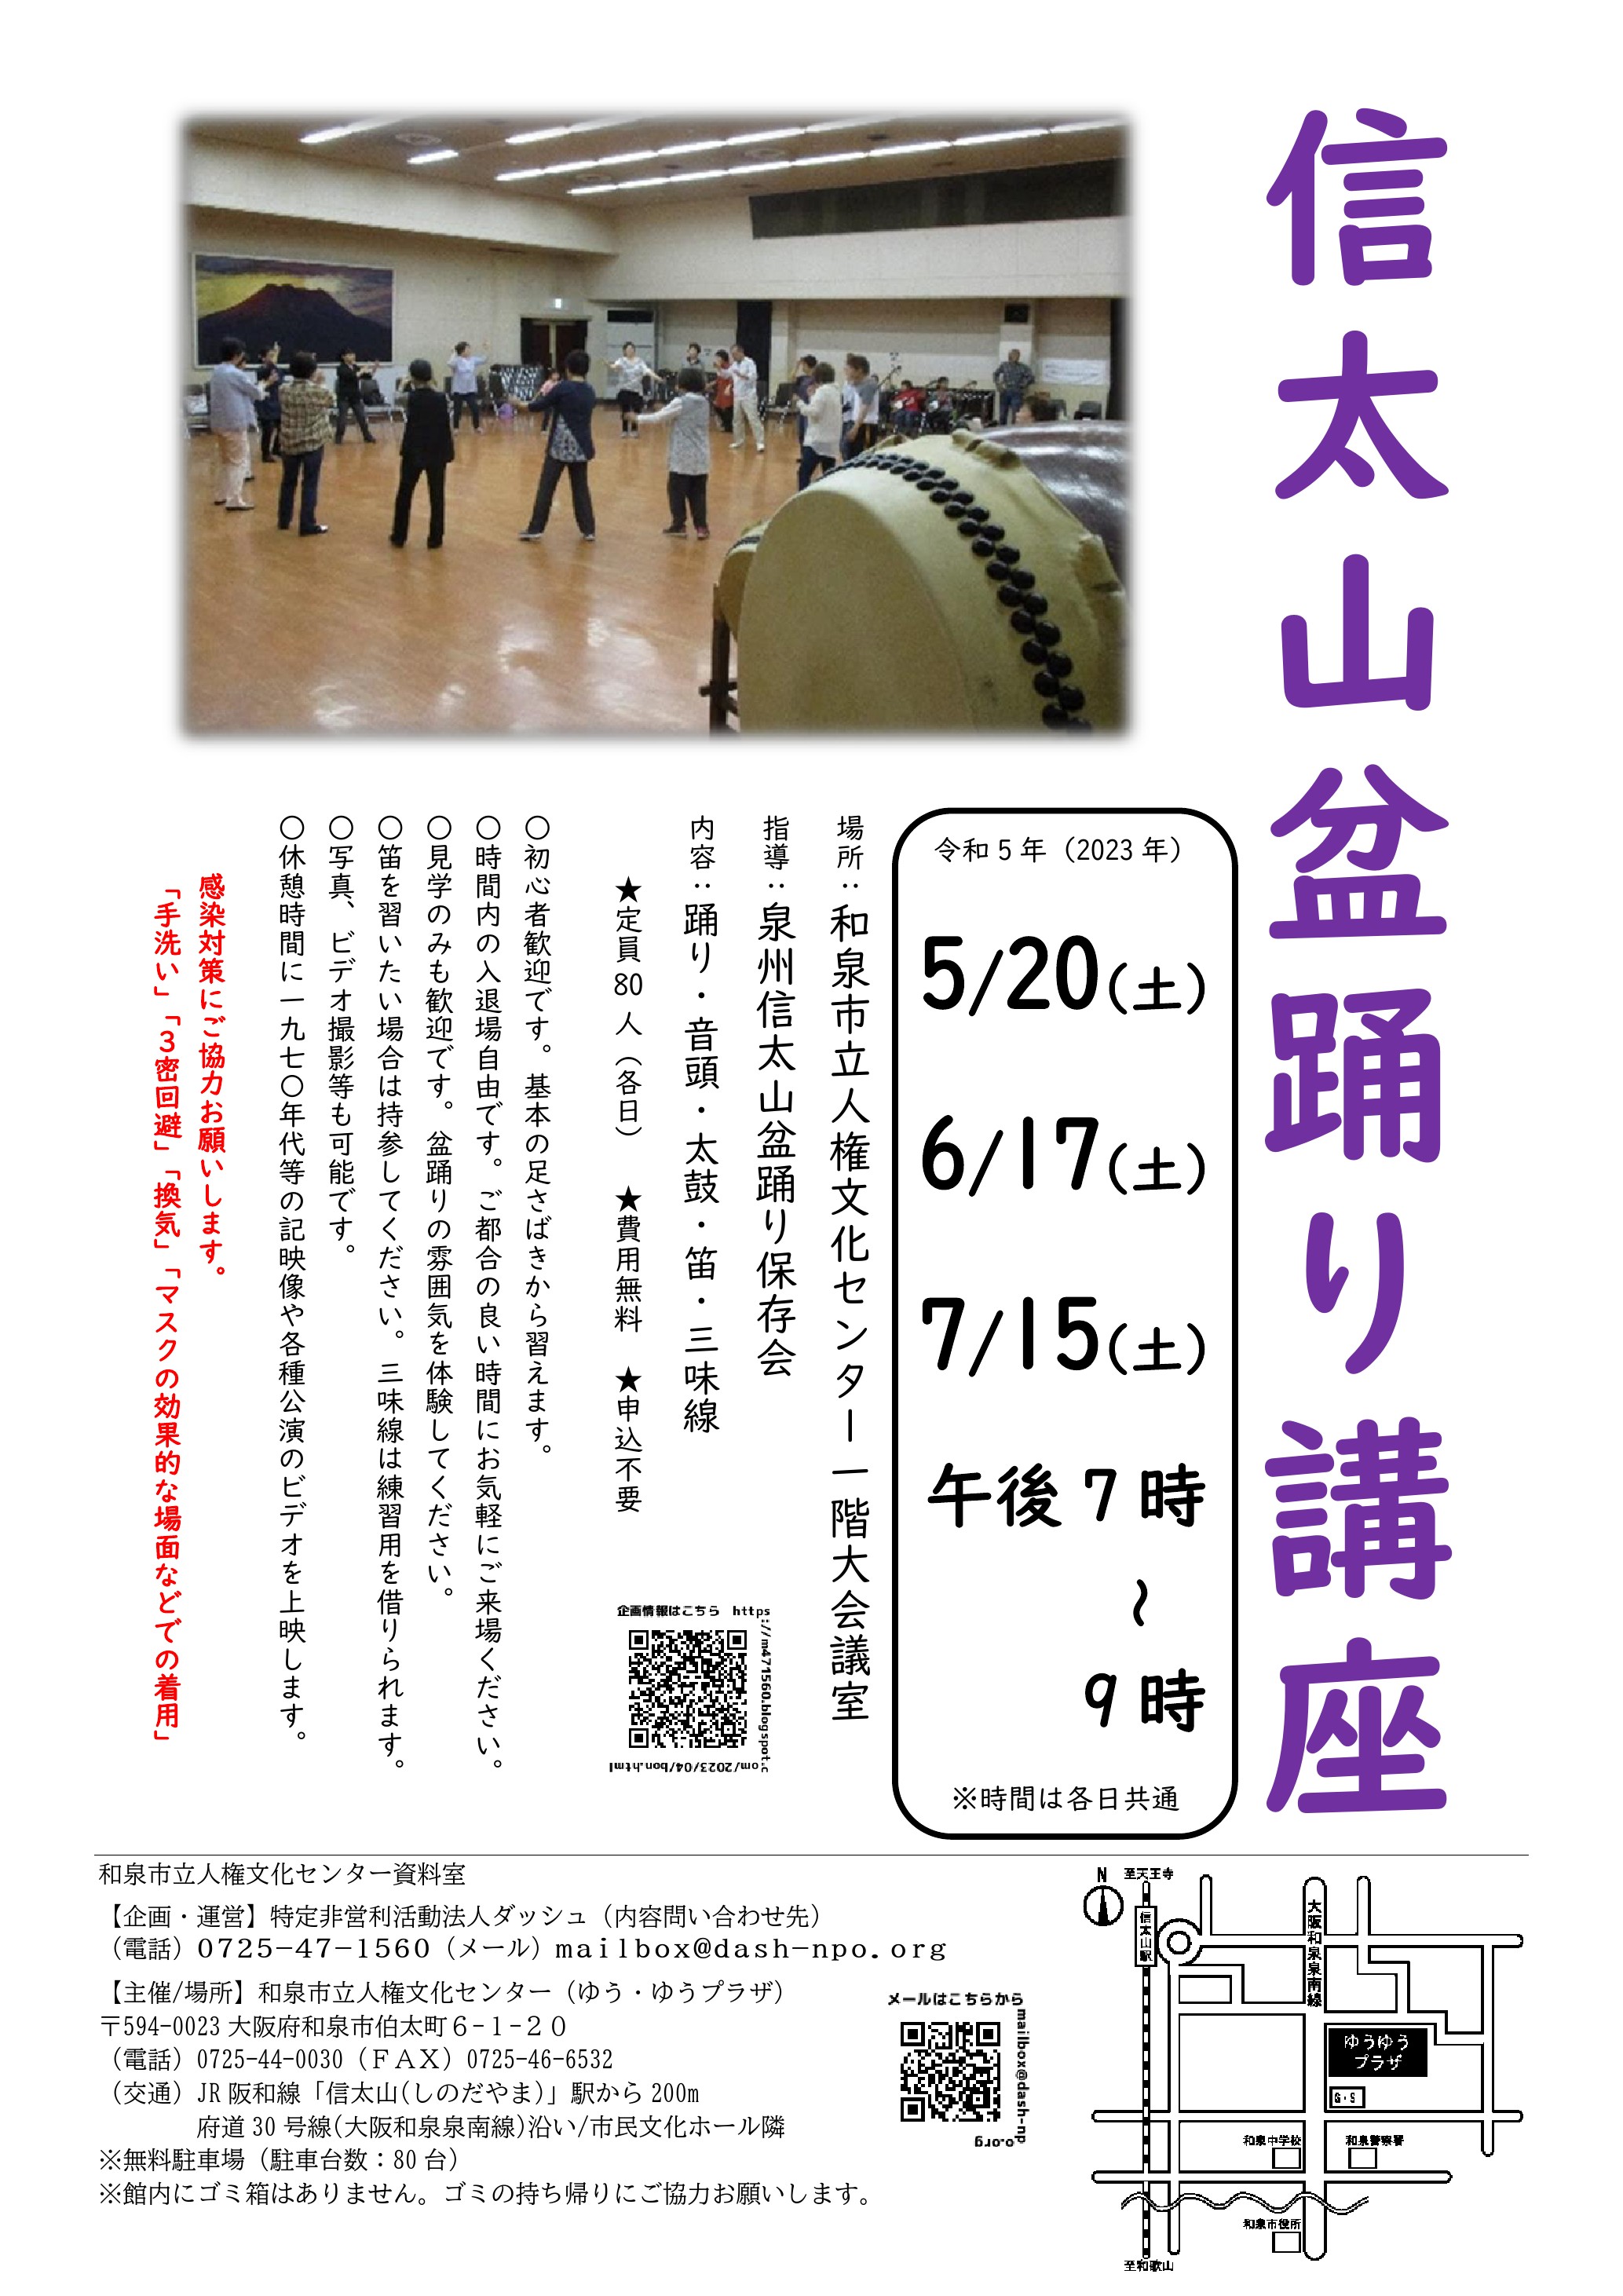 【終了】信太山盆踊り講座～和泉市立人権文化センター～